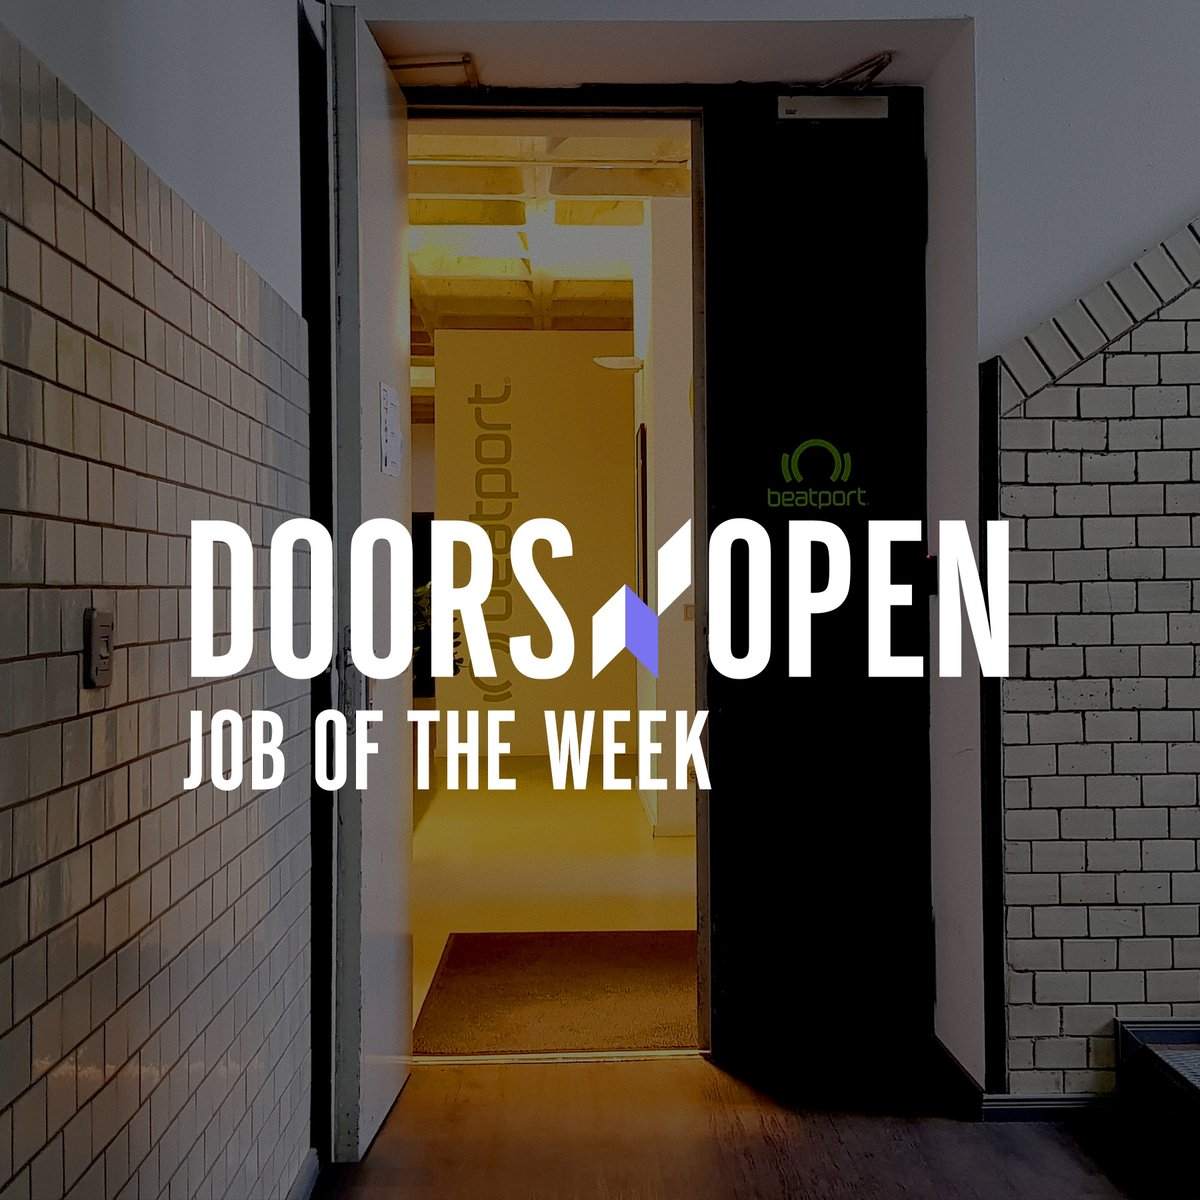 Doors Open job of the week: Beatport image